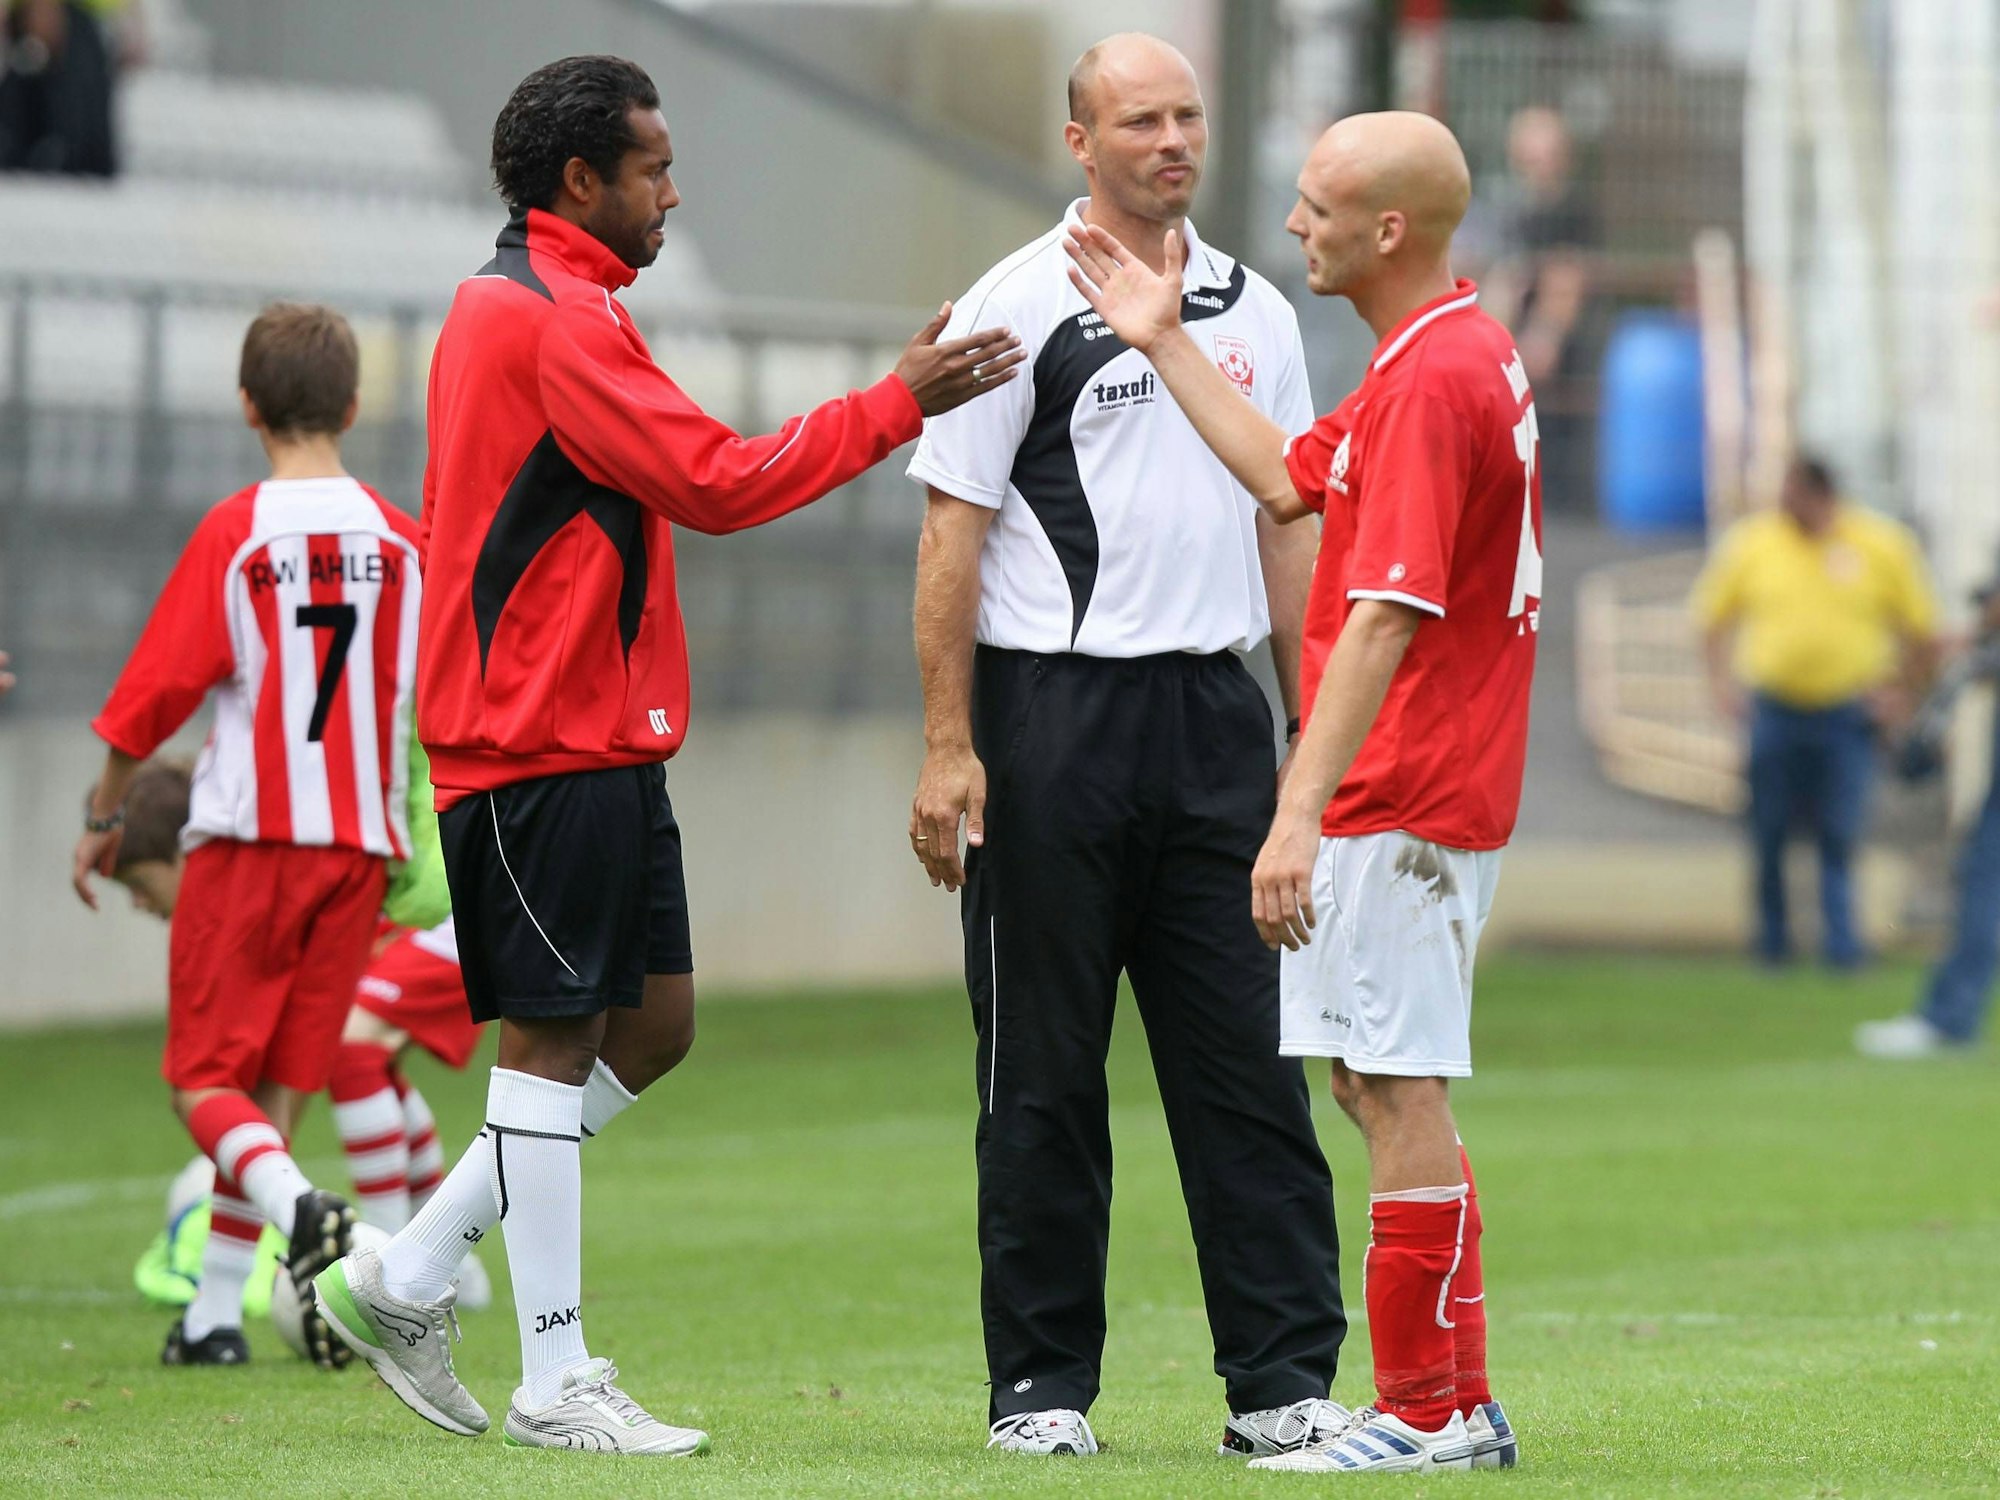 Daniel Thioune klatscht mit Teamkollege Nils-Ole Book nach dem Spiel von Rot Weiss Ahlen gegen Werder Bremen II ab. Dahinter steht Ahlen-Coach Arie van Lent.